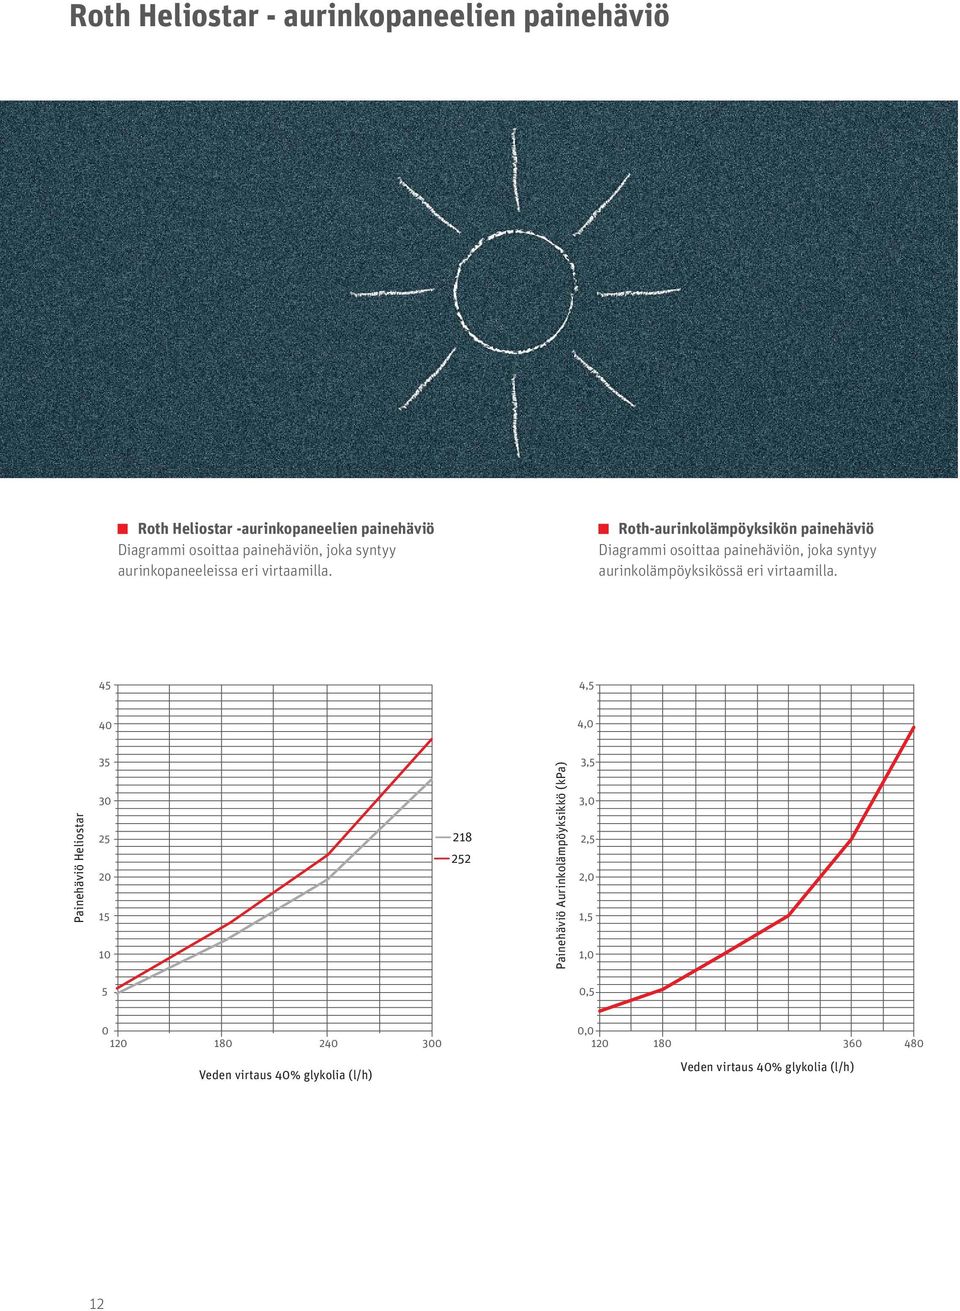 Roth-aurinkolämpöyksikön painehäviö Diagrammi osoittaa painehäviön, joka syntyy aurinkolämpöyksikössä eri virtaamilla.